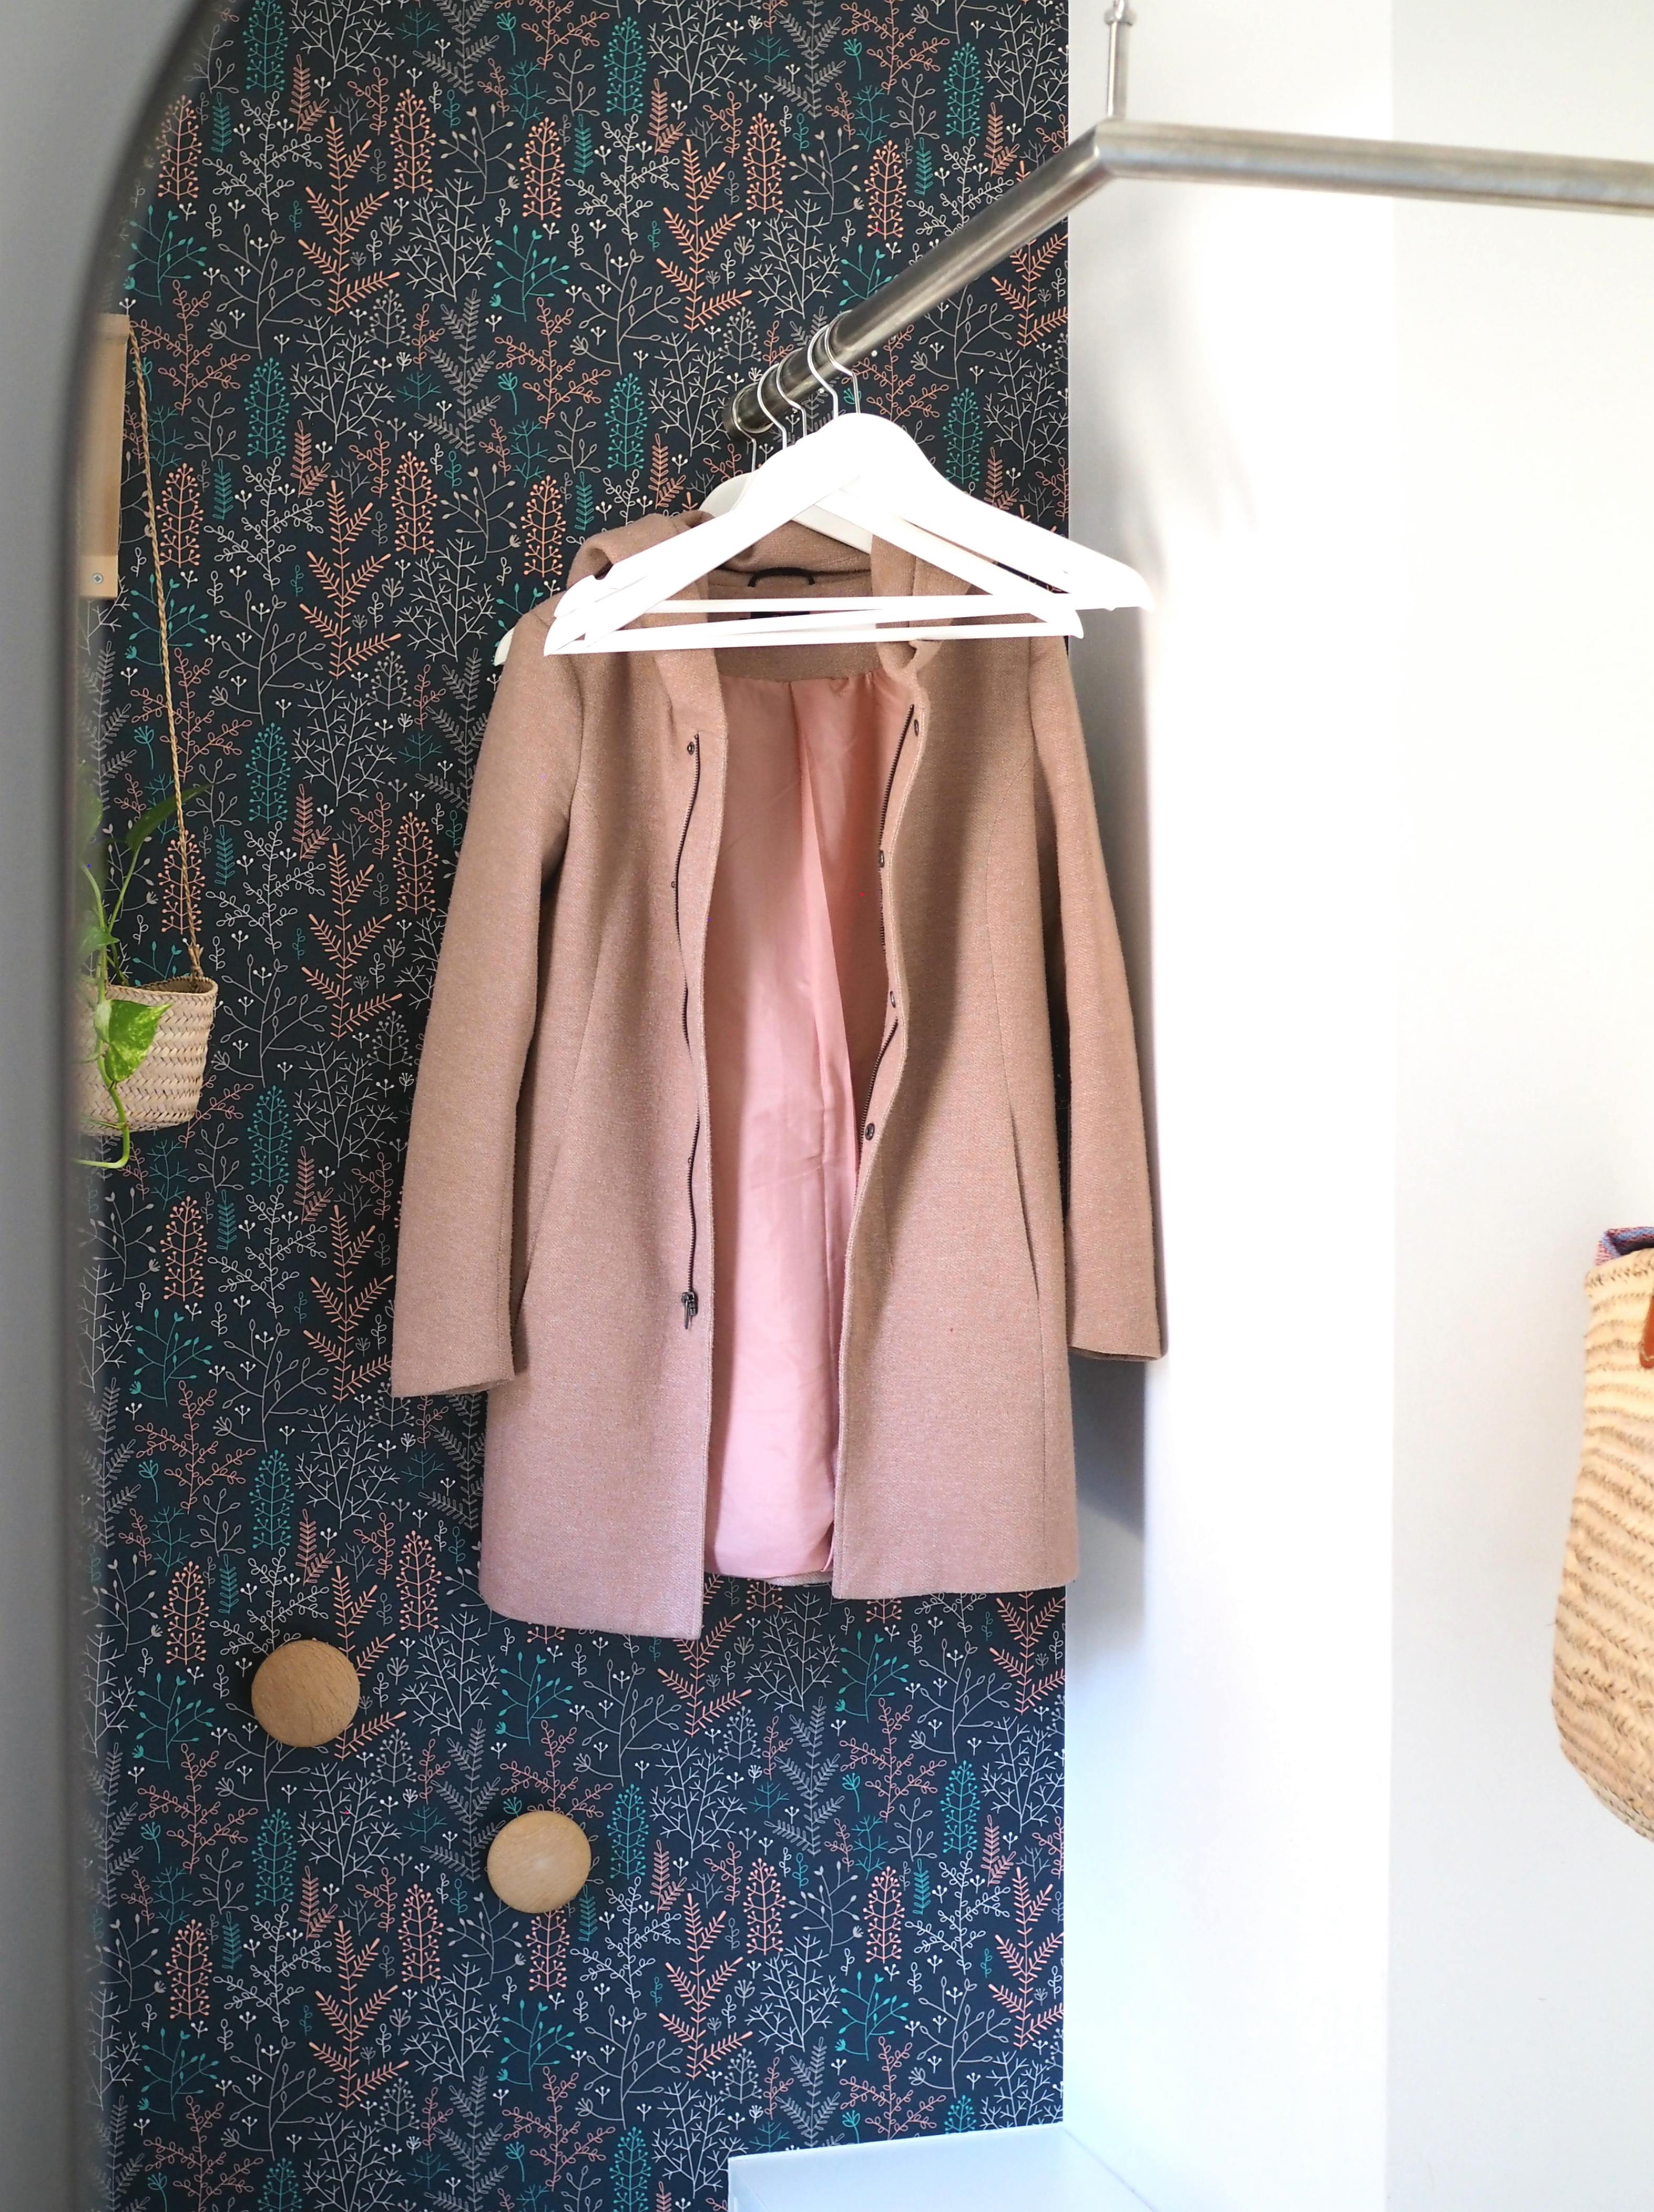 Kleine, feine Räume - da kommt es manchmal auf jeden Zentimeter an...
#garderobe #flur #diele